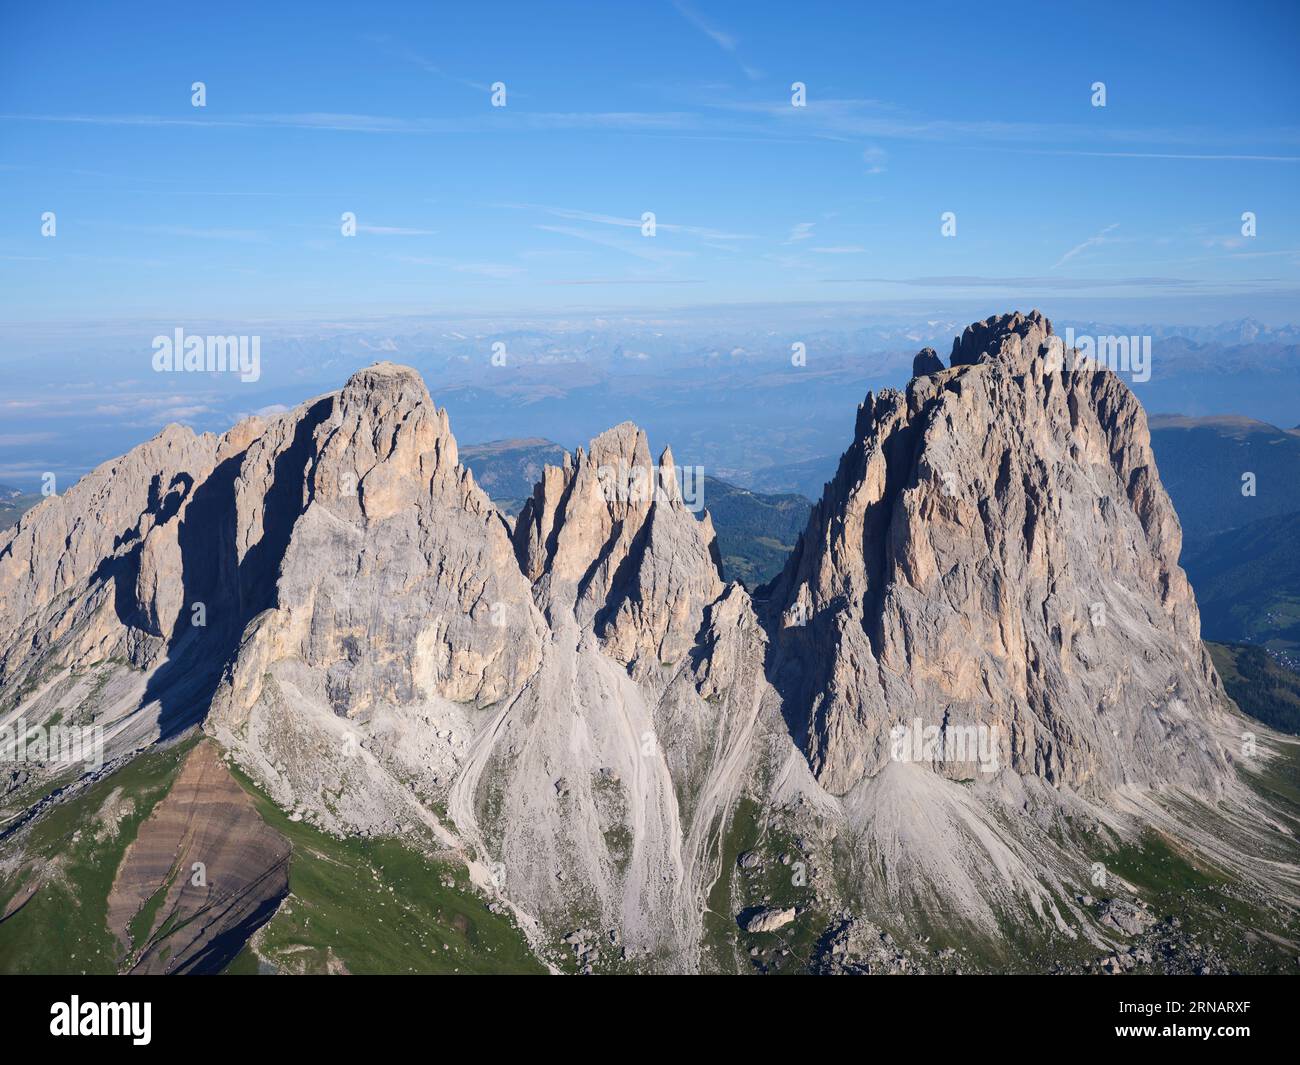 VUE AÉRIENNE. Groupe Sassolungo avec son plus haut sommet, le Sassolungo (en italien) ou Langkofel (en allemand) de 3181 mètres de haut. Dolomites, Italie. Banque D'Images